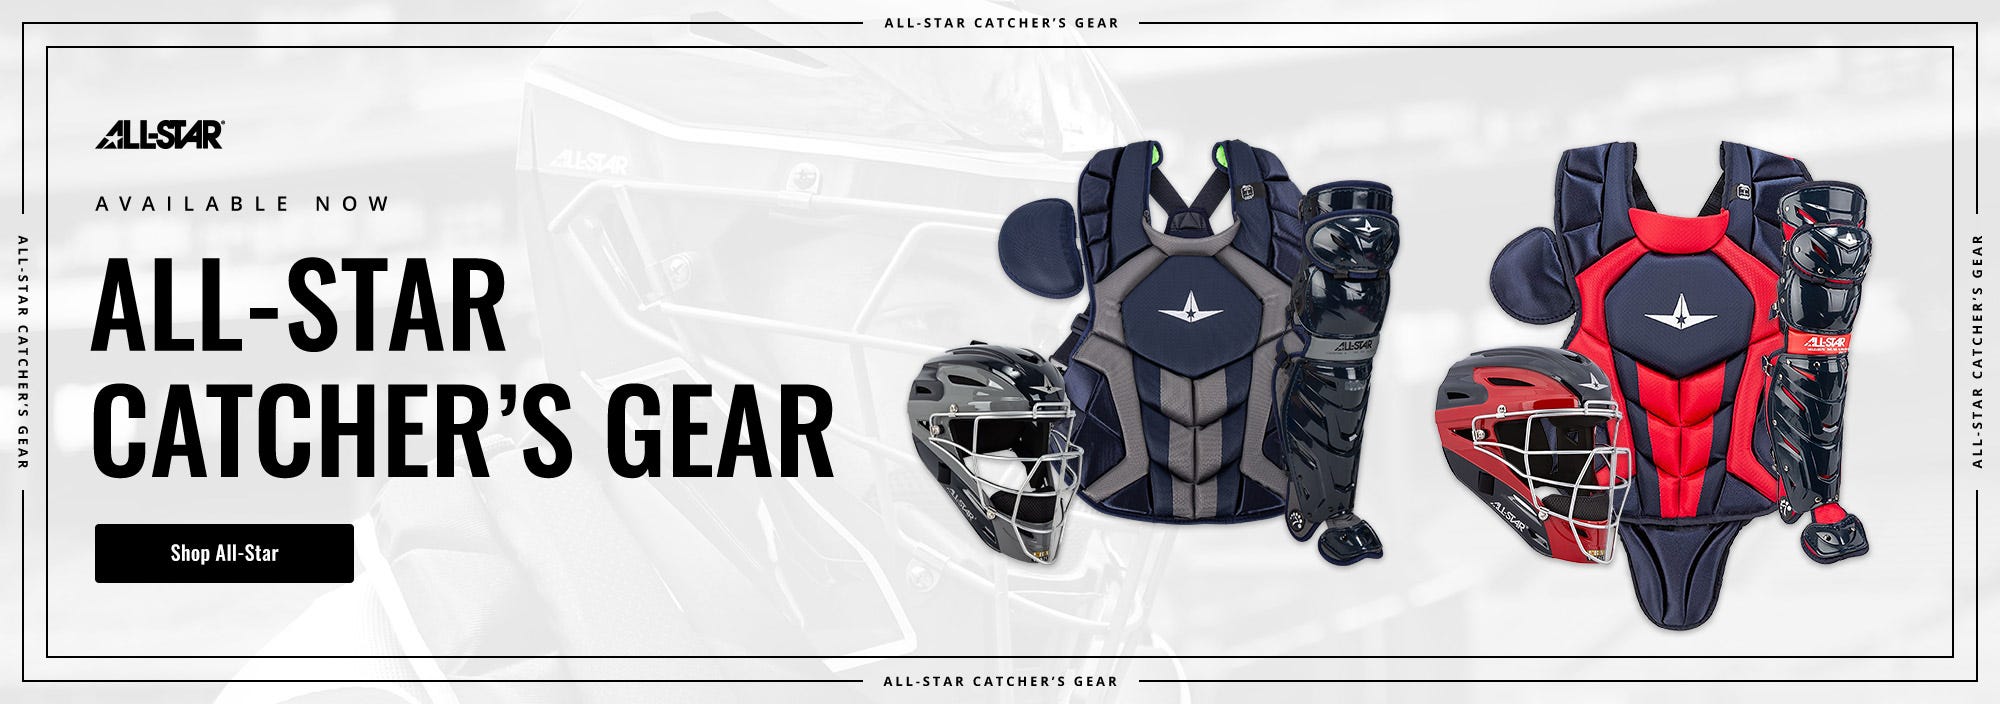 All-Star Catcher's Gear